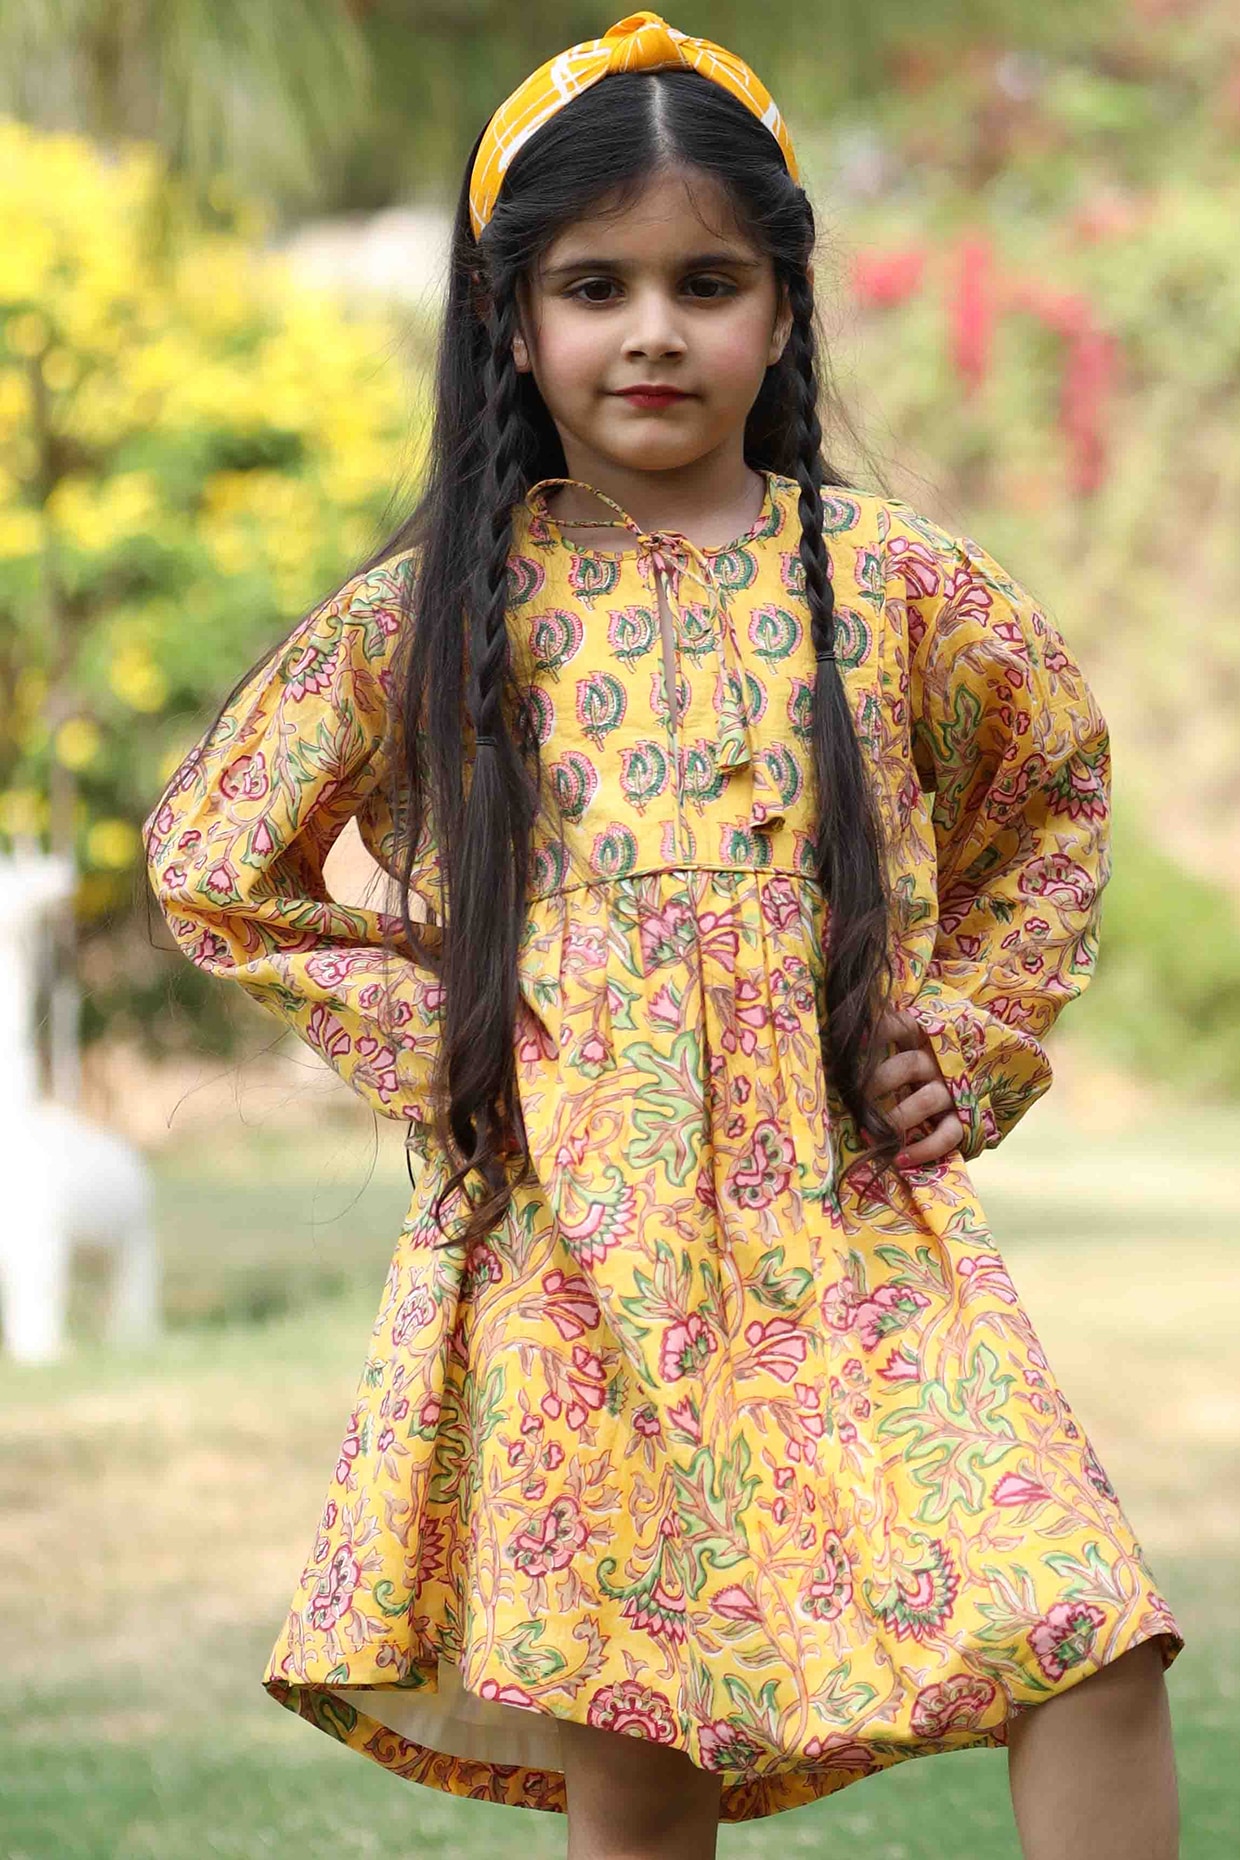 Girls Dresses - Buy Girls Dresses online at Best Prices in India |  Flipkart.com